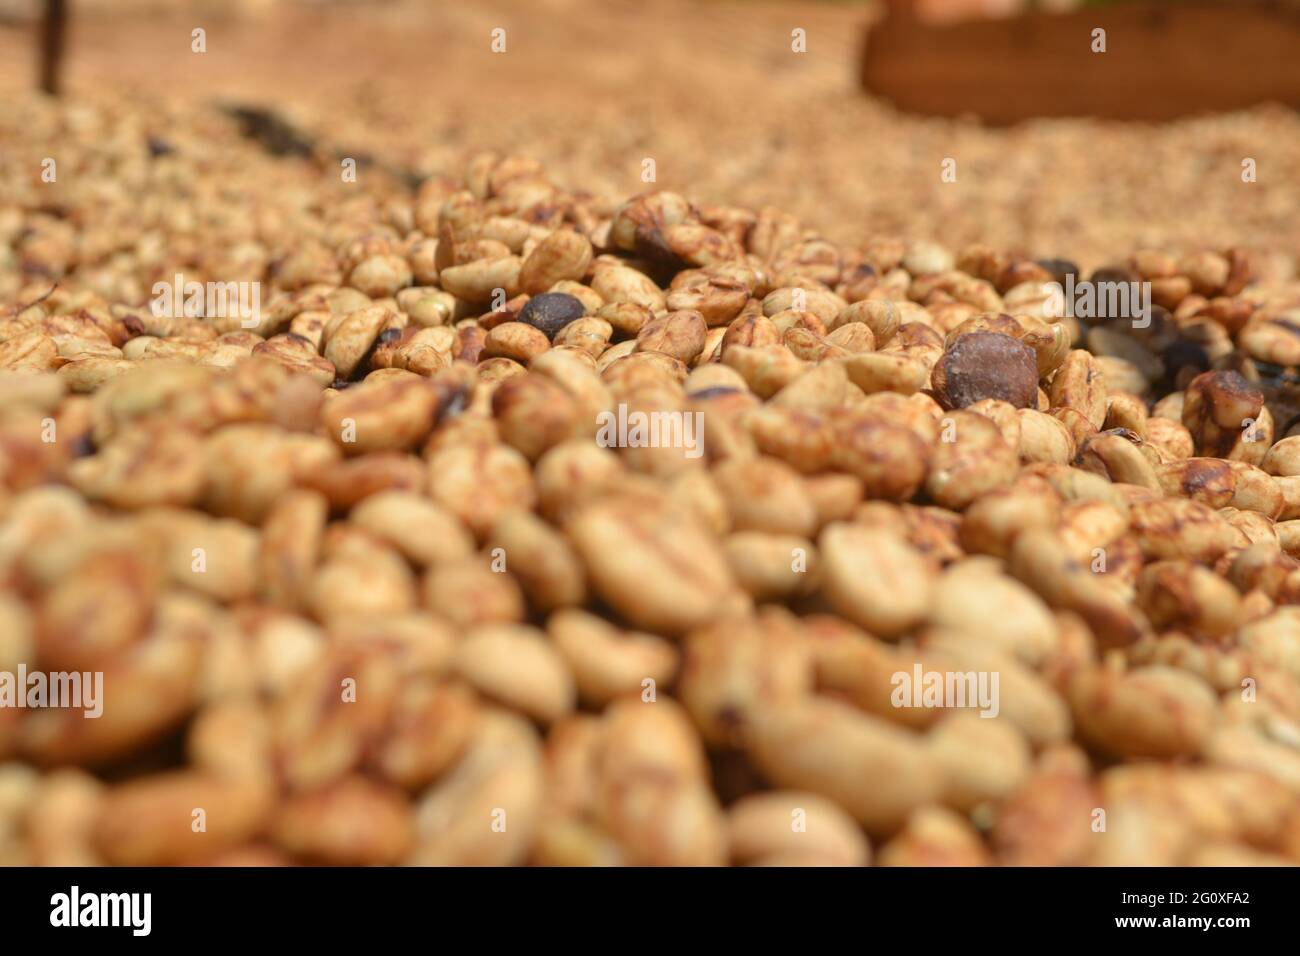 Nahaufnahme der geernteten Kaffeebohnen, die zum Mahlen bereit sind Stockfoto